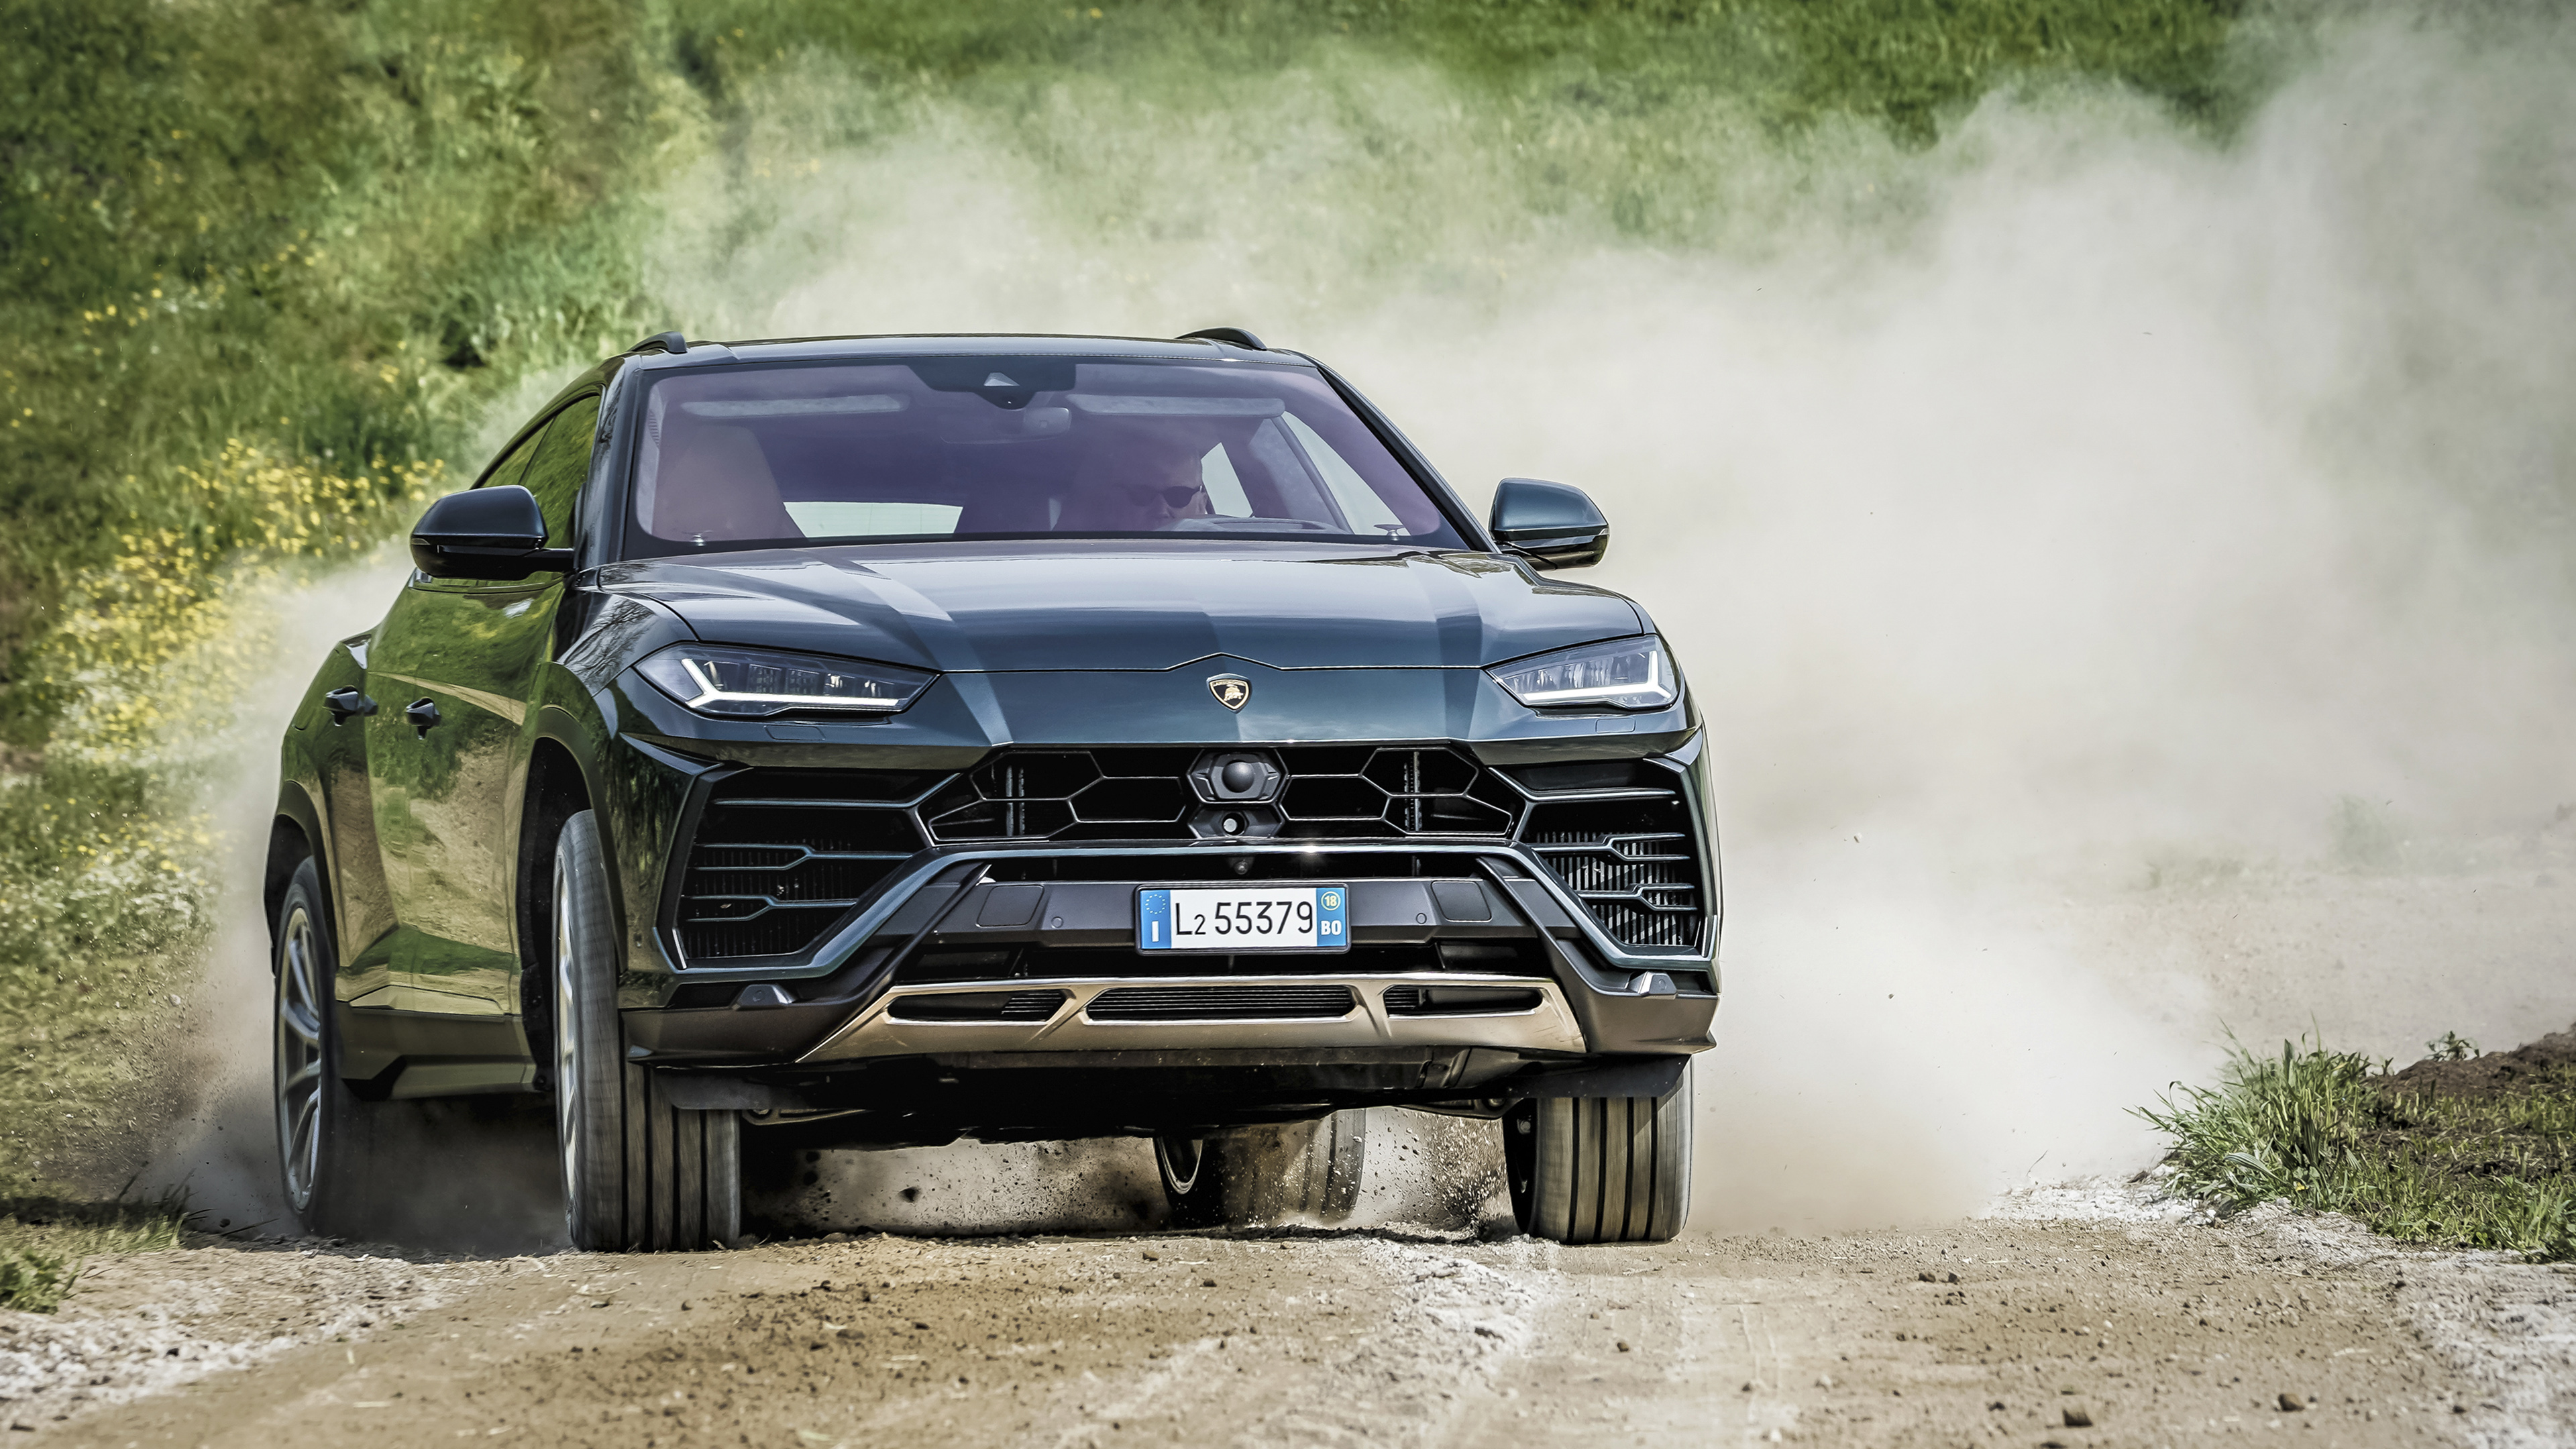 Lamborghini: Τέσσερα νέα μοντέλα το 2022 και εξηλεκτρισμός από το 2023